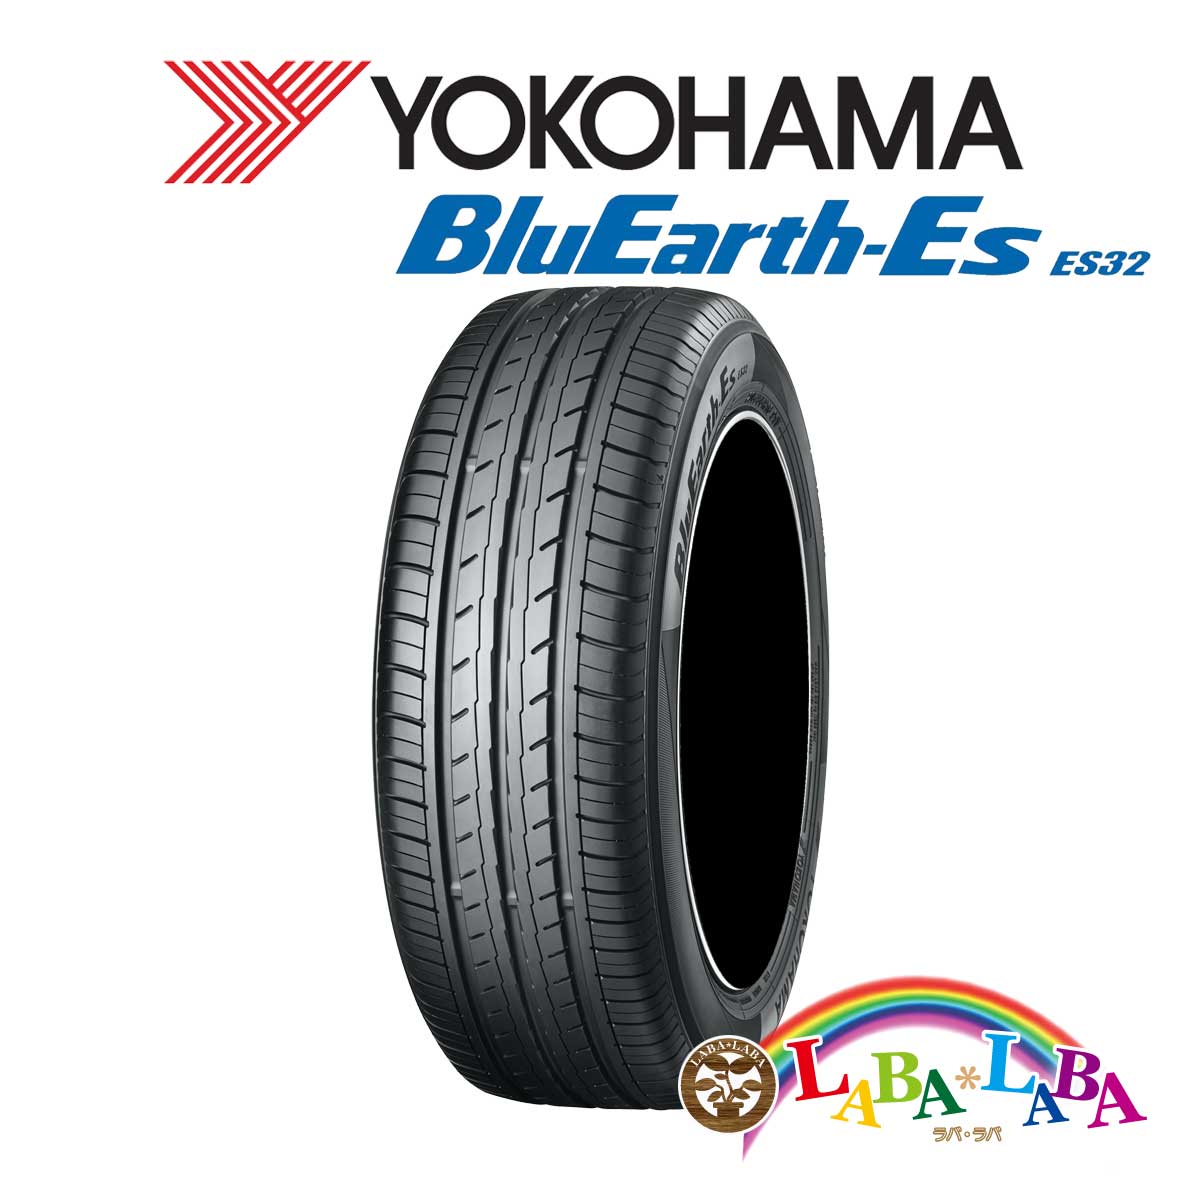 ２本以上送料無料 国産タイヤ 100%正規品 サマータイヤ 新品 タイヤのみ YOKOHAMA 【中古】 ヨコハマ ブルーアース BluEarth-Es 60R16 ES32 86H 185